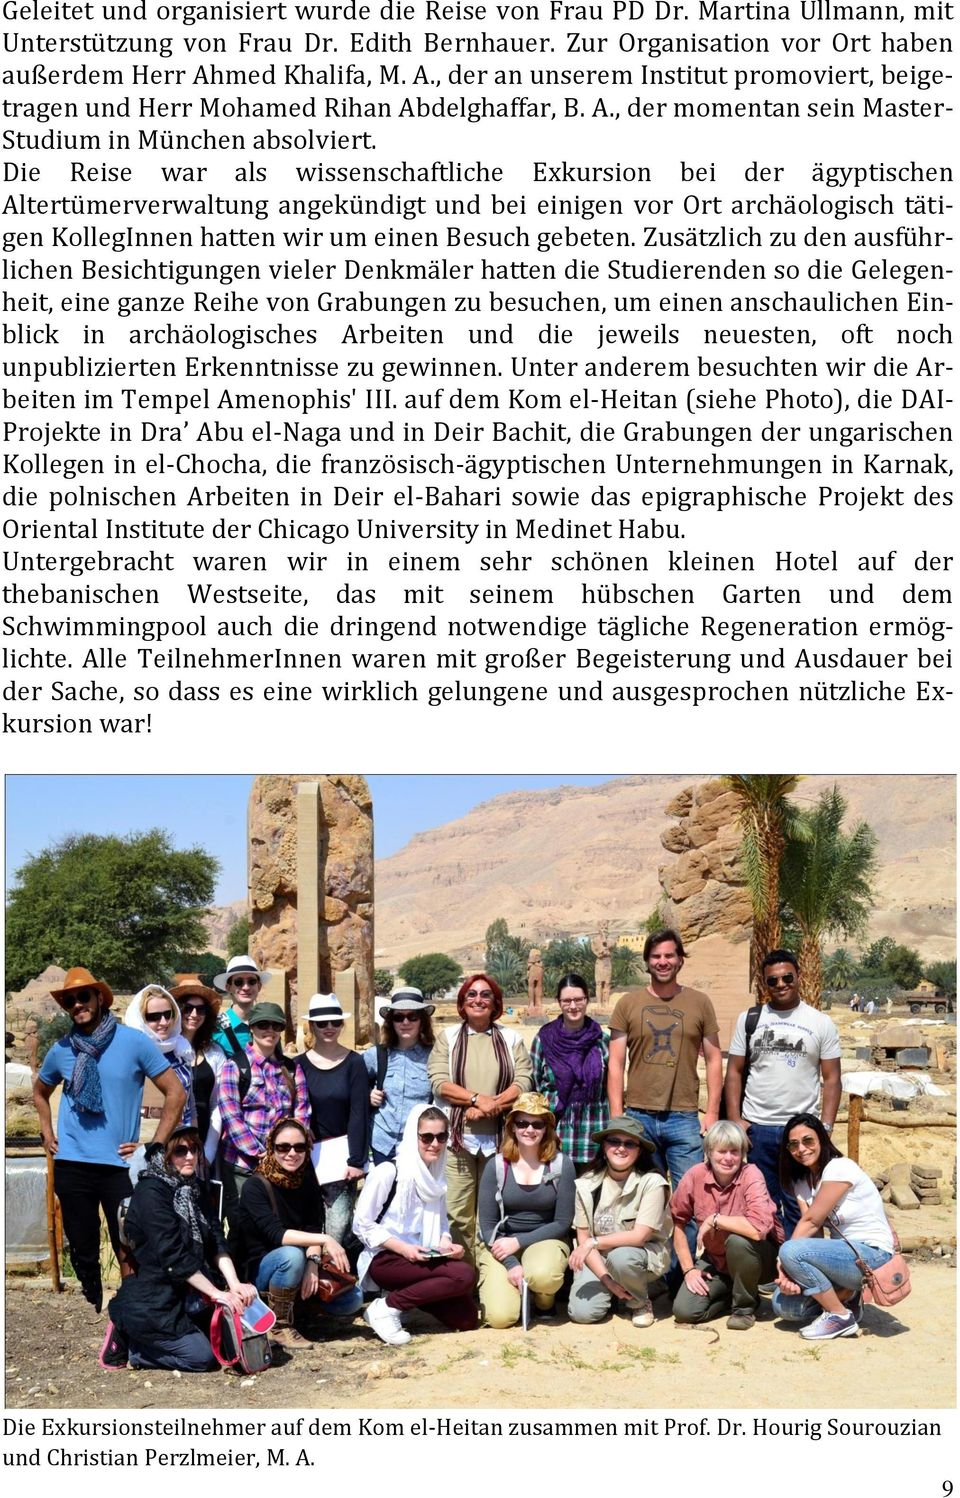 Die Reise war als wissenschaftliche Exkursion bei der ägyptischen Altertümerverwaltung angekündigt und bei einigen vor Ort archäologisch tätigen KollegInnen hatten wir um einen Besuch gebeten.